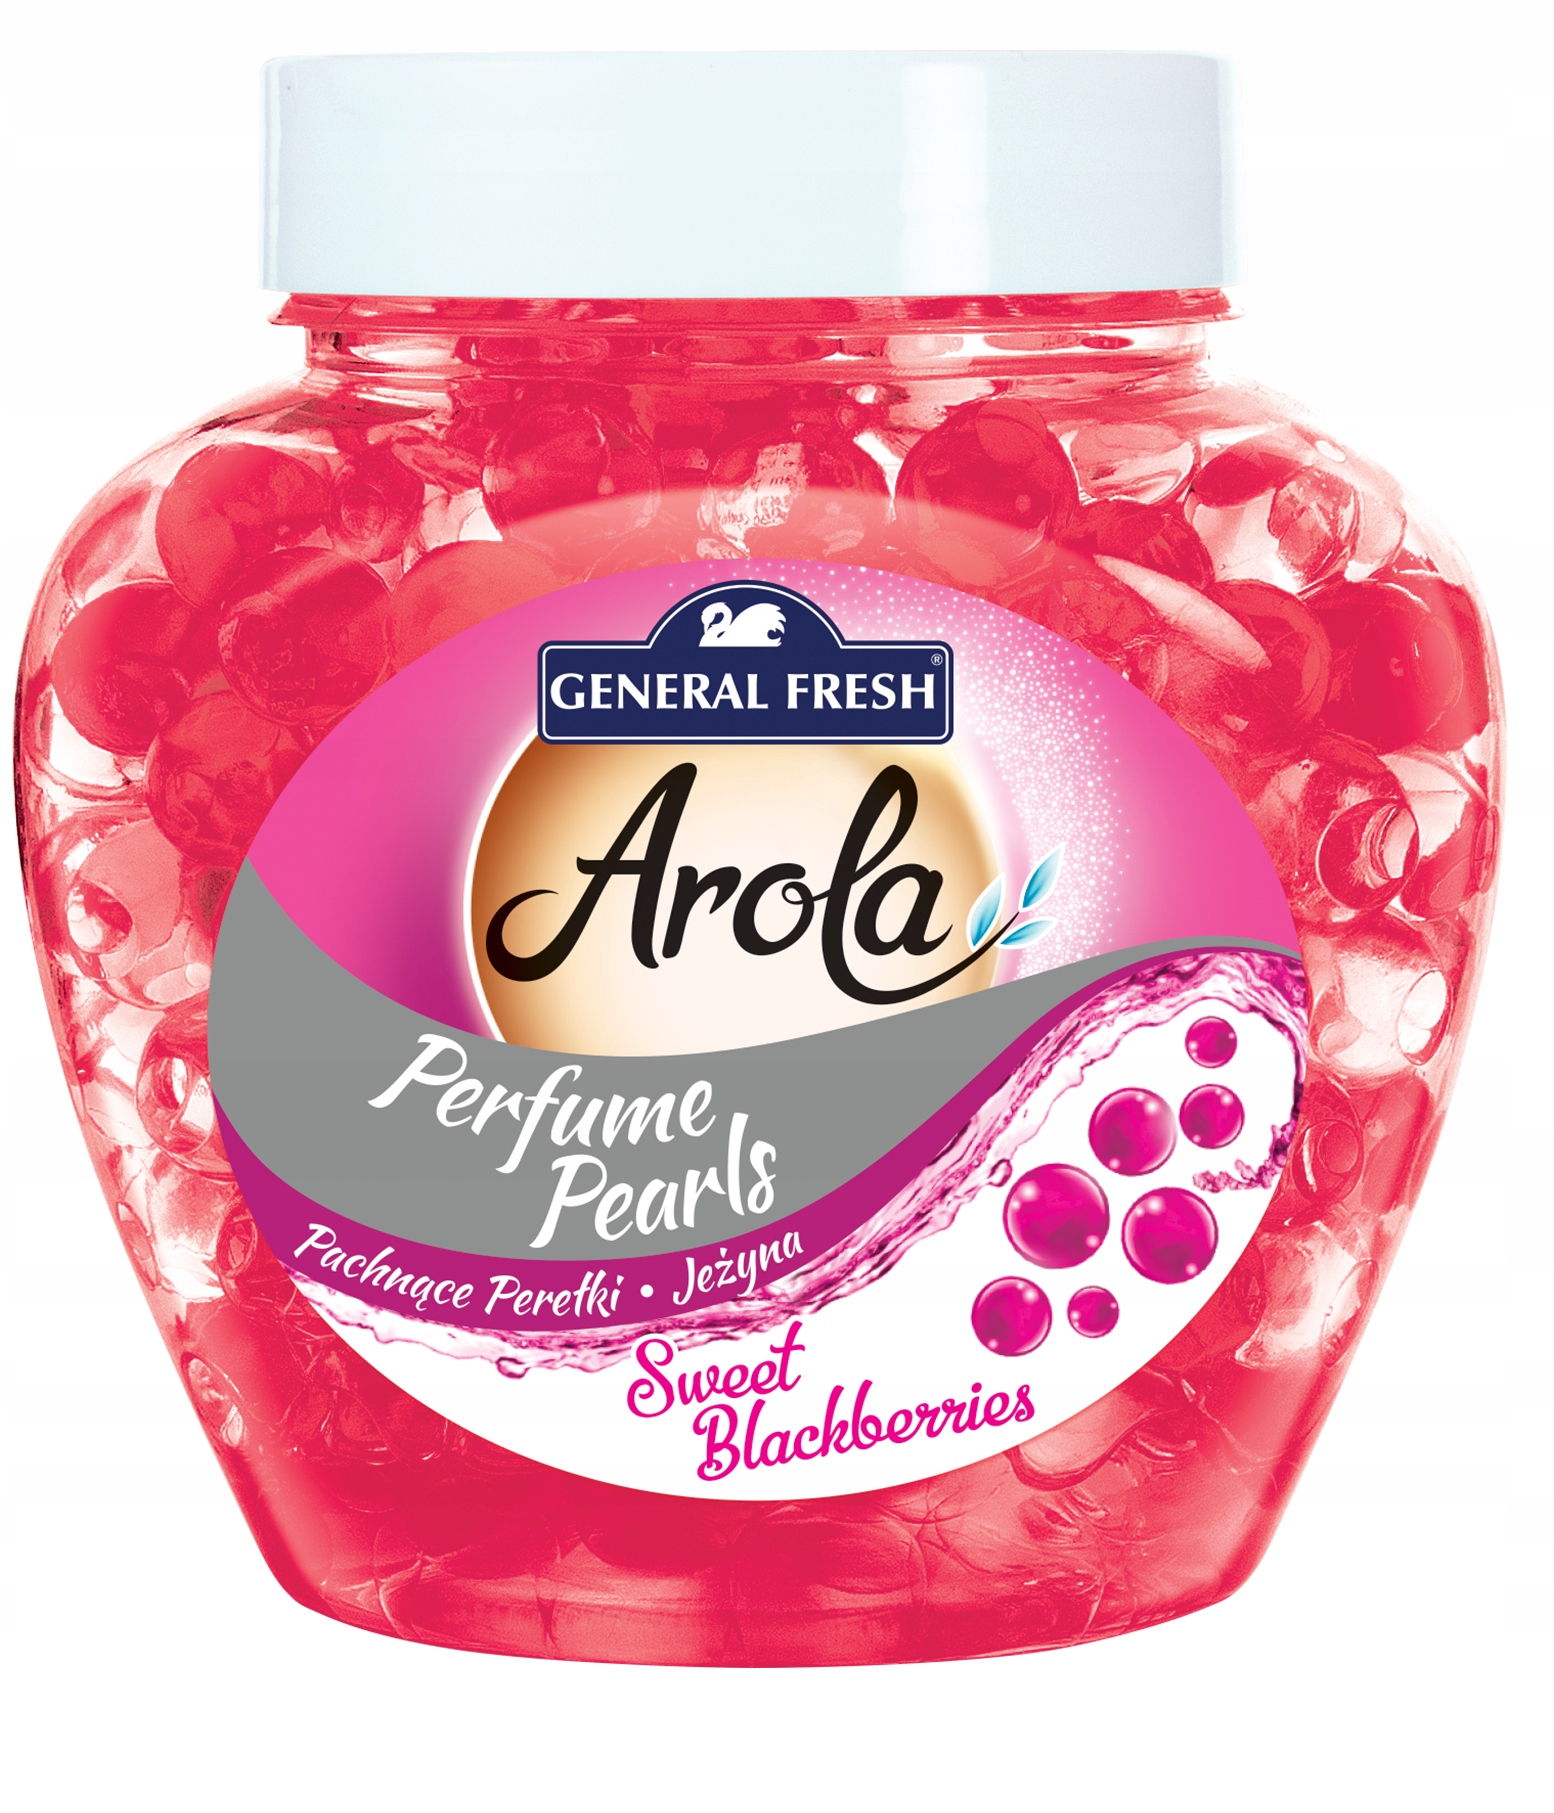 General Fresh Arola Voňavé perly - černicové 250 ml 250 g